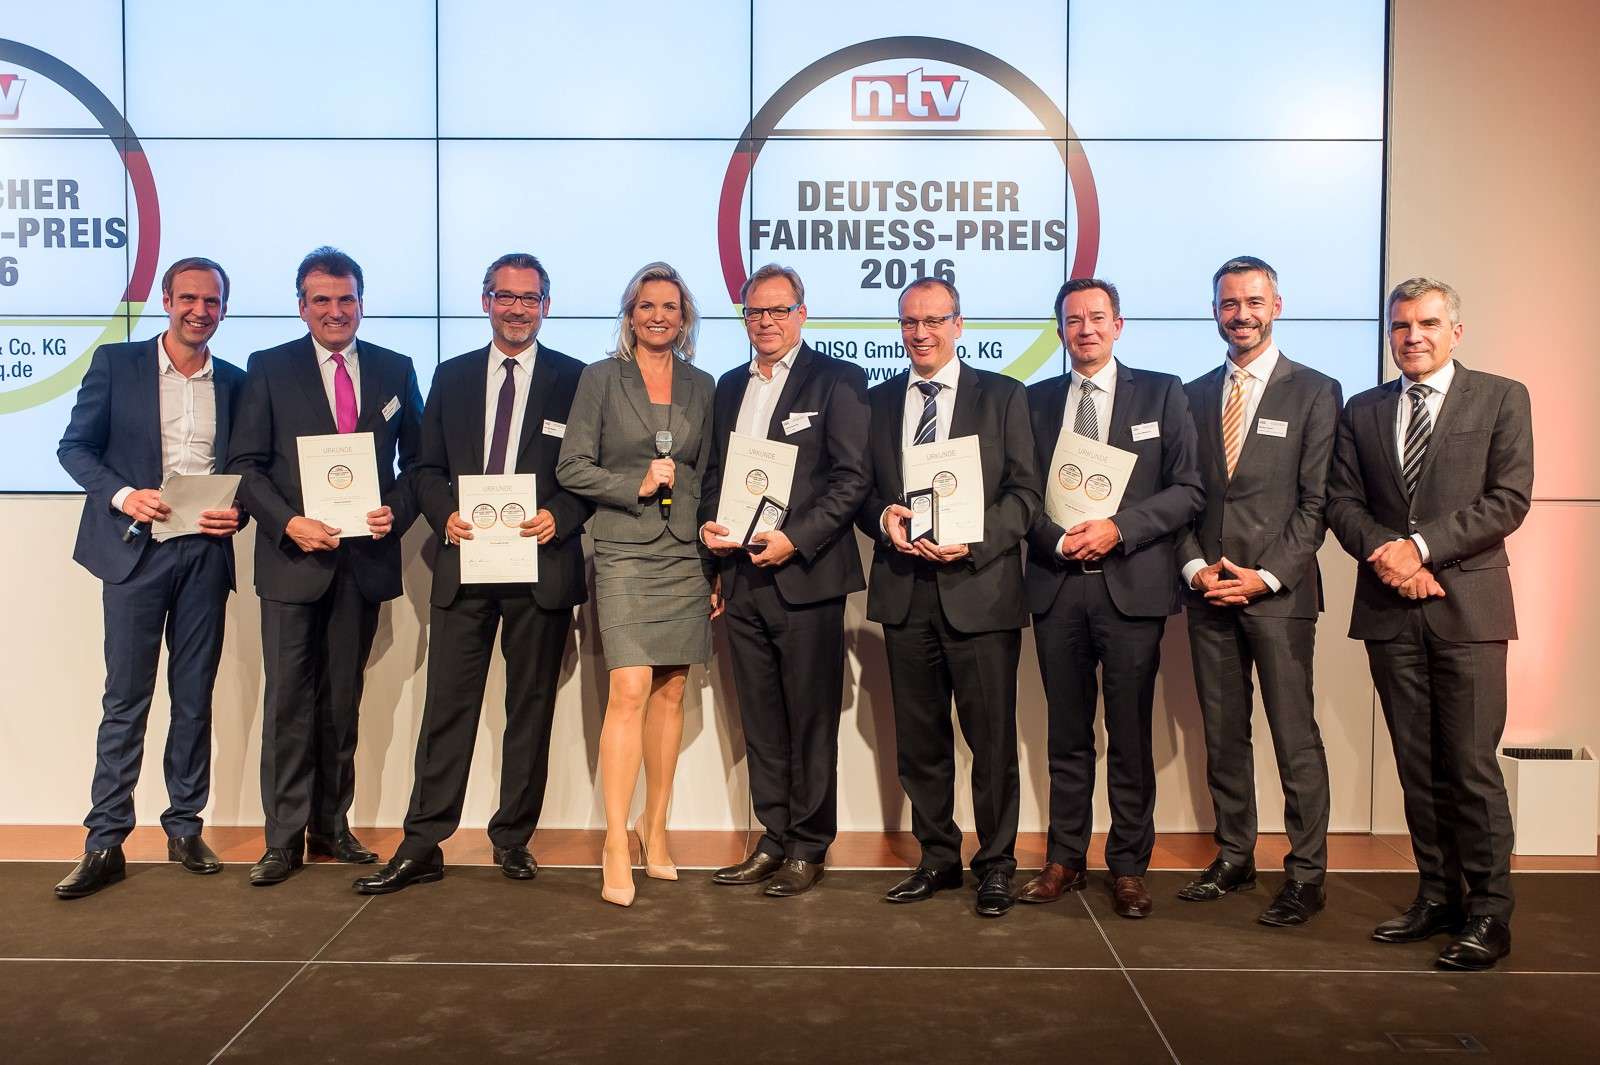 Deutscher Fairness-Preis 2016: A-ROSA sichert sich den ersten Platz unter den getesteten Anbietern für Flusskreuzfahrten